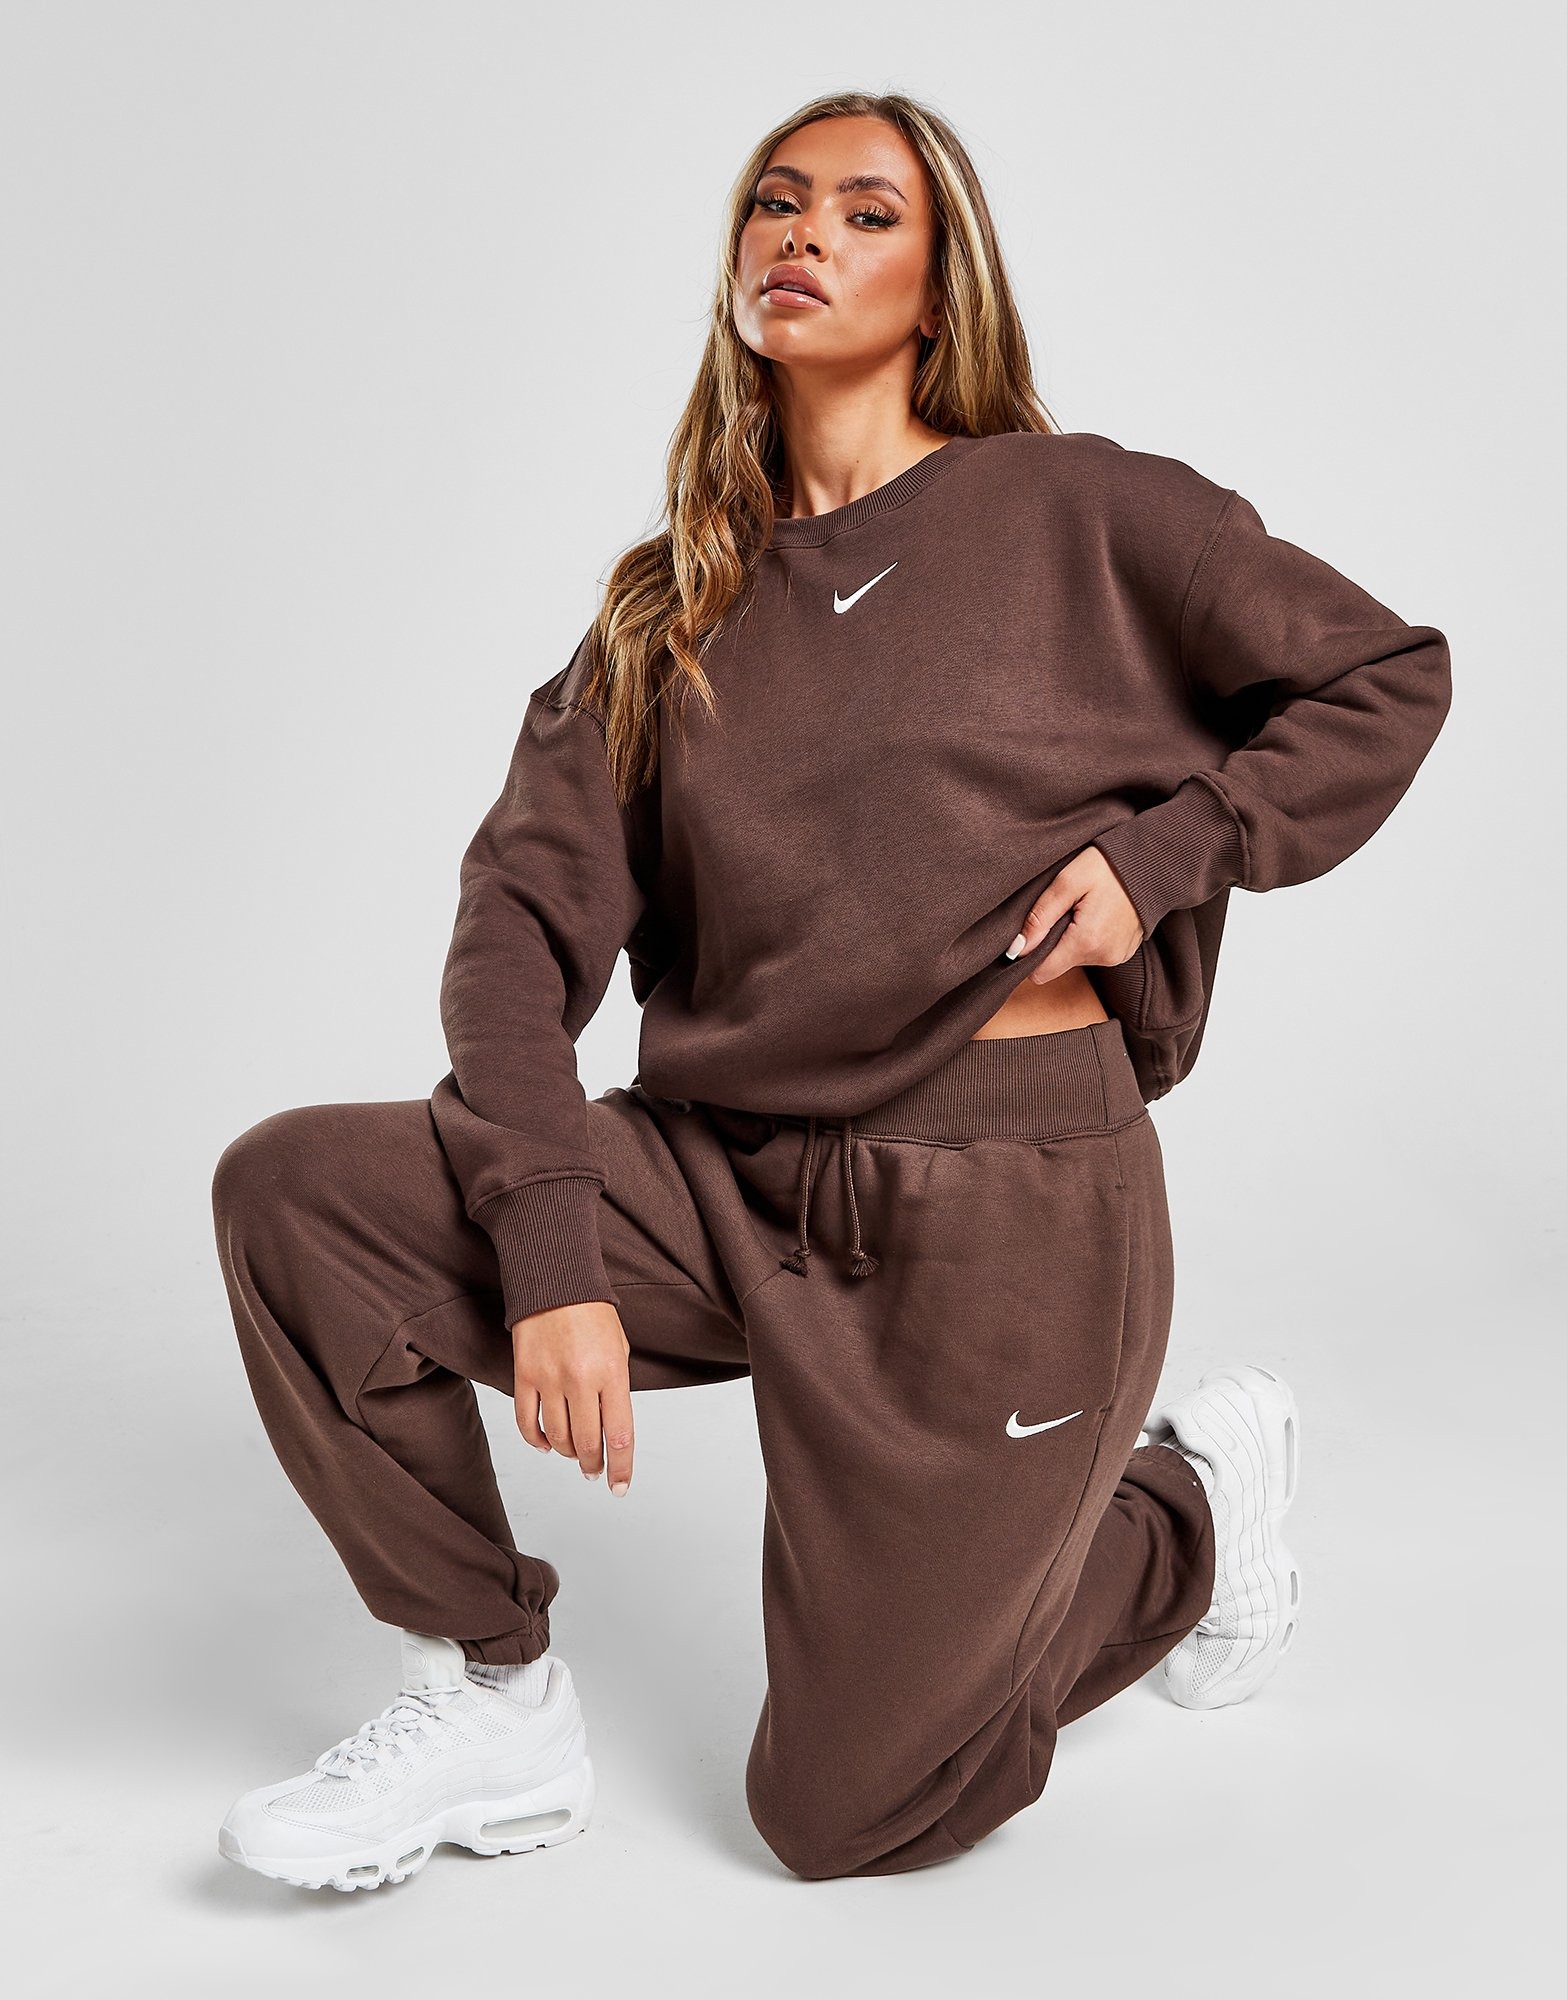 Brown Nike Phoenix Fleece Oversized Sweatpants Women's | JD Sports UK